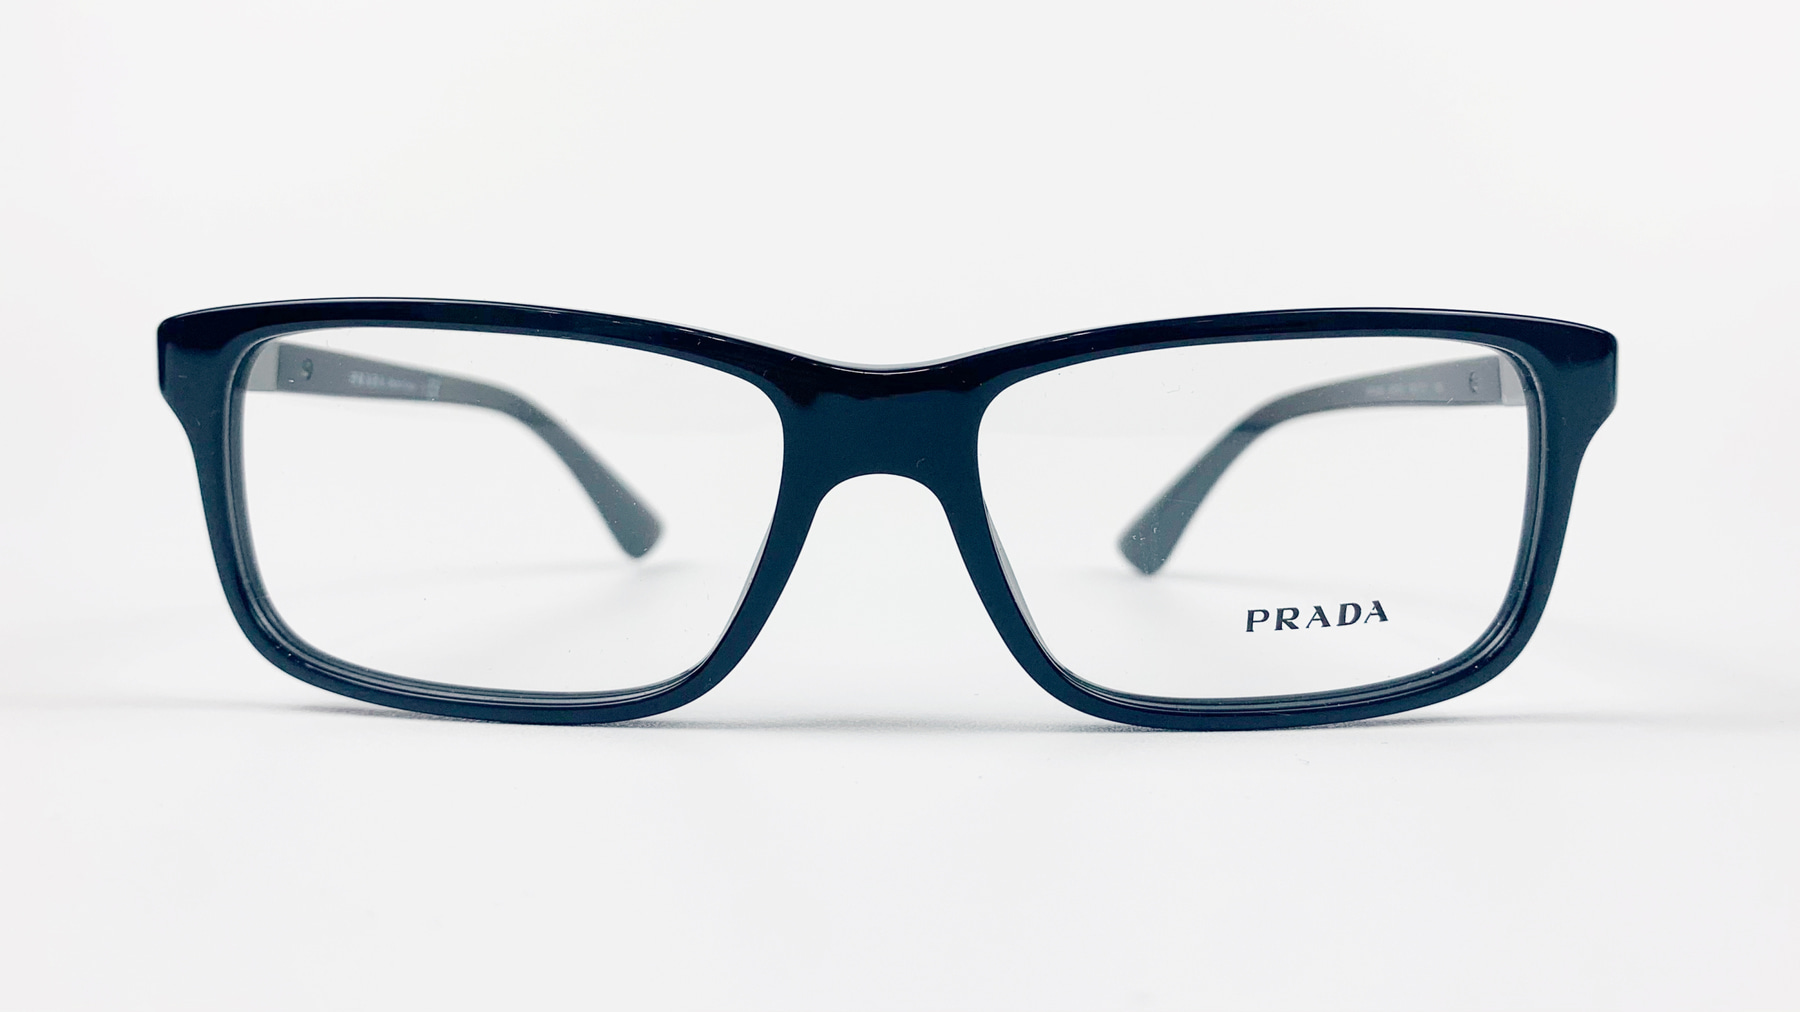 PRADA VPR 06S, Korean glasses, sunglasses, eyeglasses, glasses